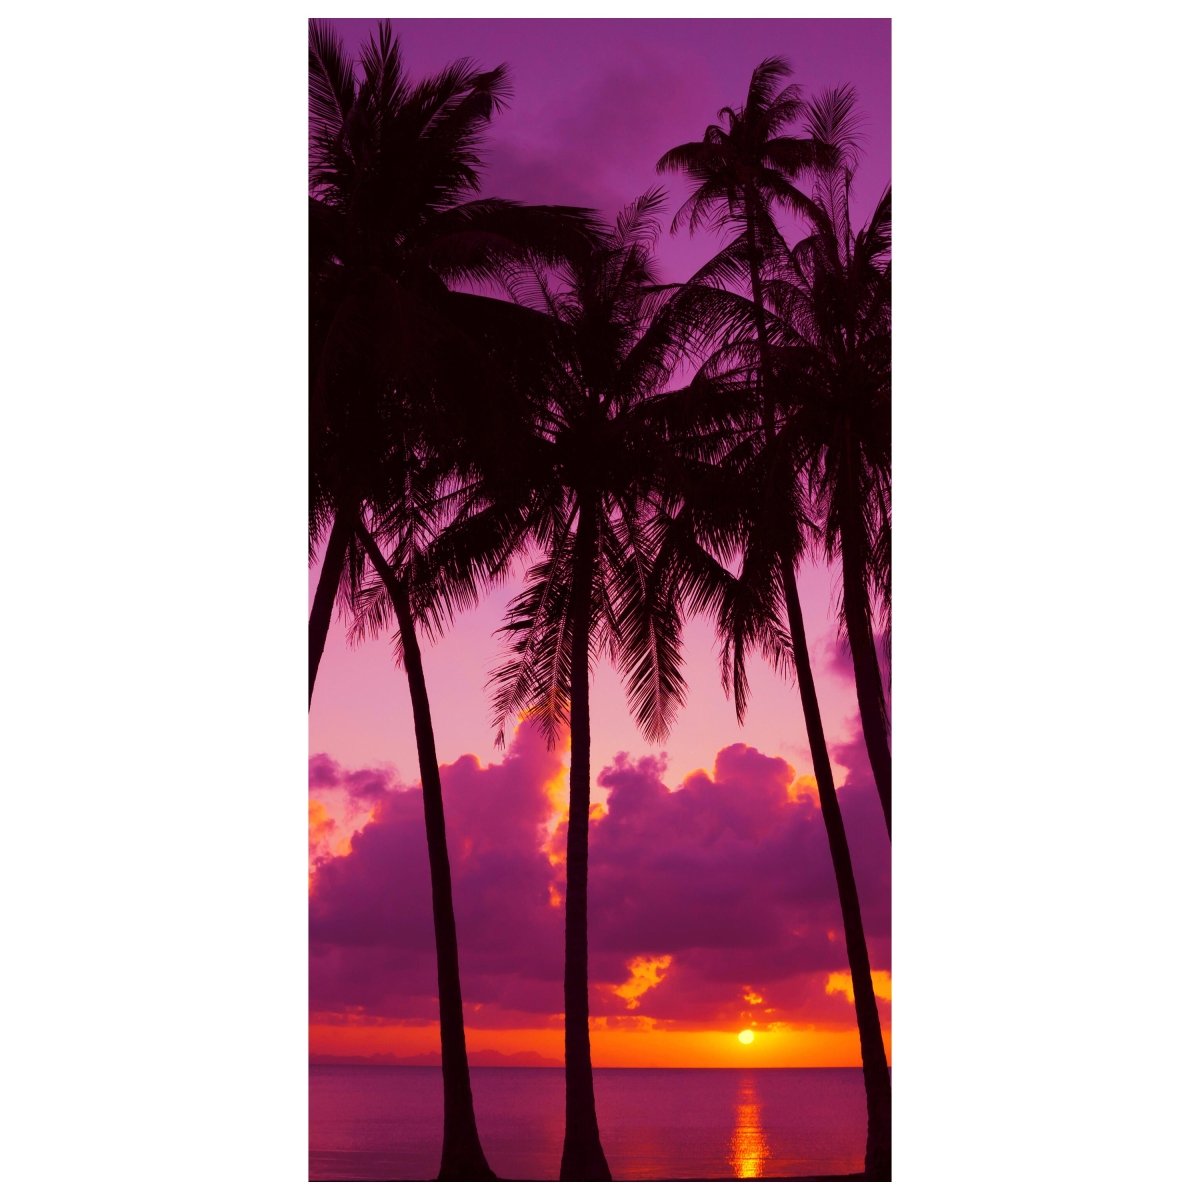 Türtapete Palmen Silhouette bei Sonnenuntergang. Thailand M0889 - Bild 2